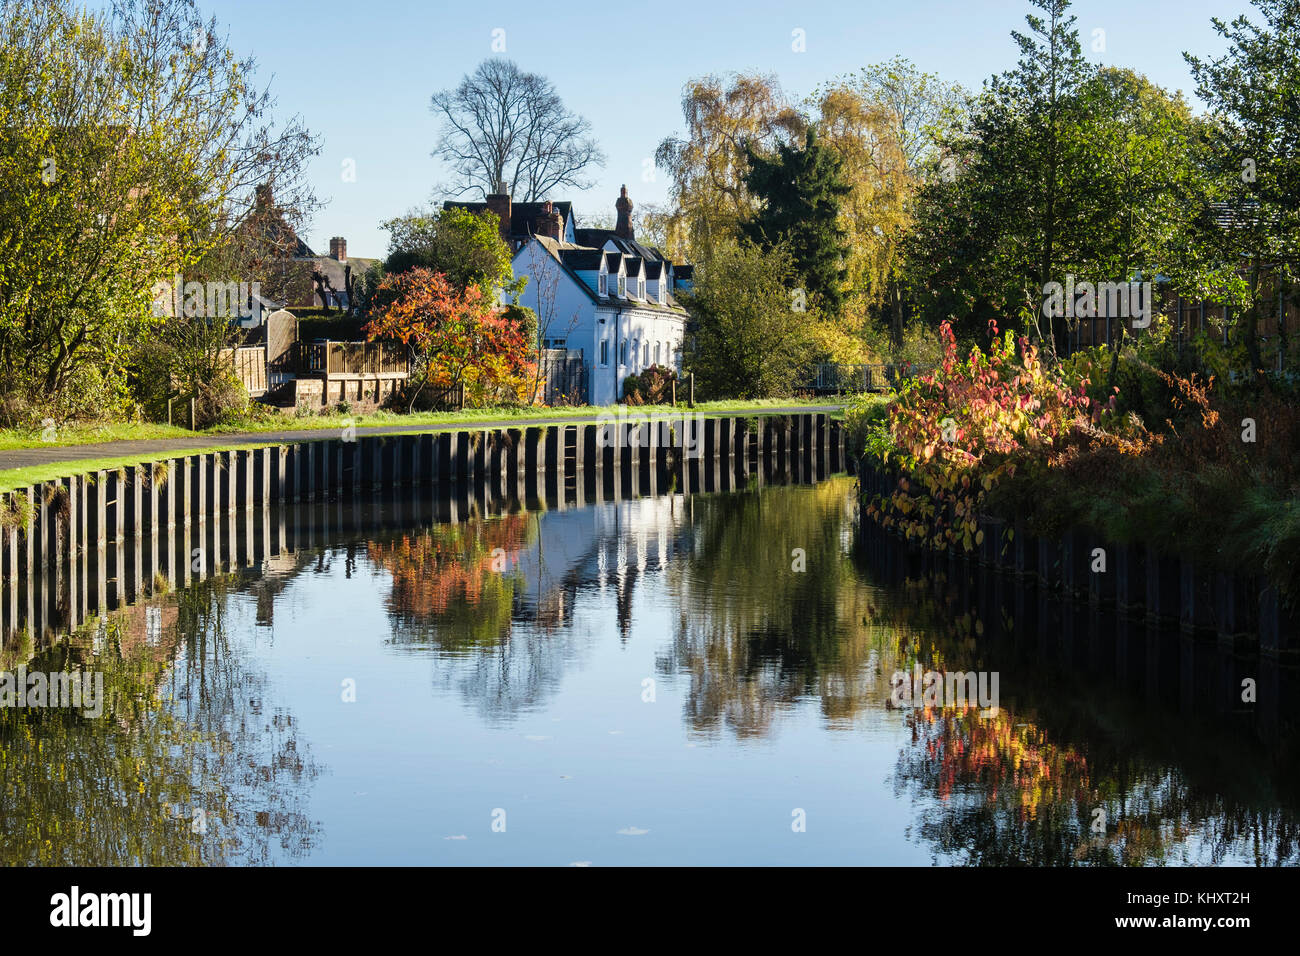 Die droitwich Kanal in Reben Park mit Wasser reflektierenden Herbst Szene. Droitwich Spa, Worcestershire, England, Großbritannien, Großbritannien Stockfoto